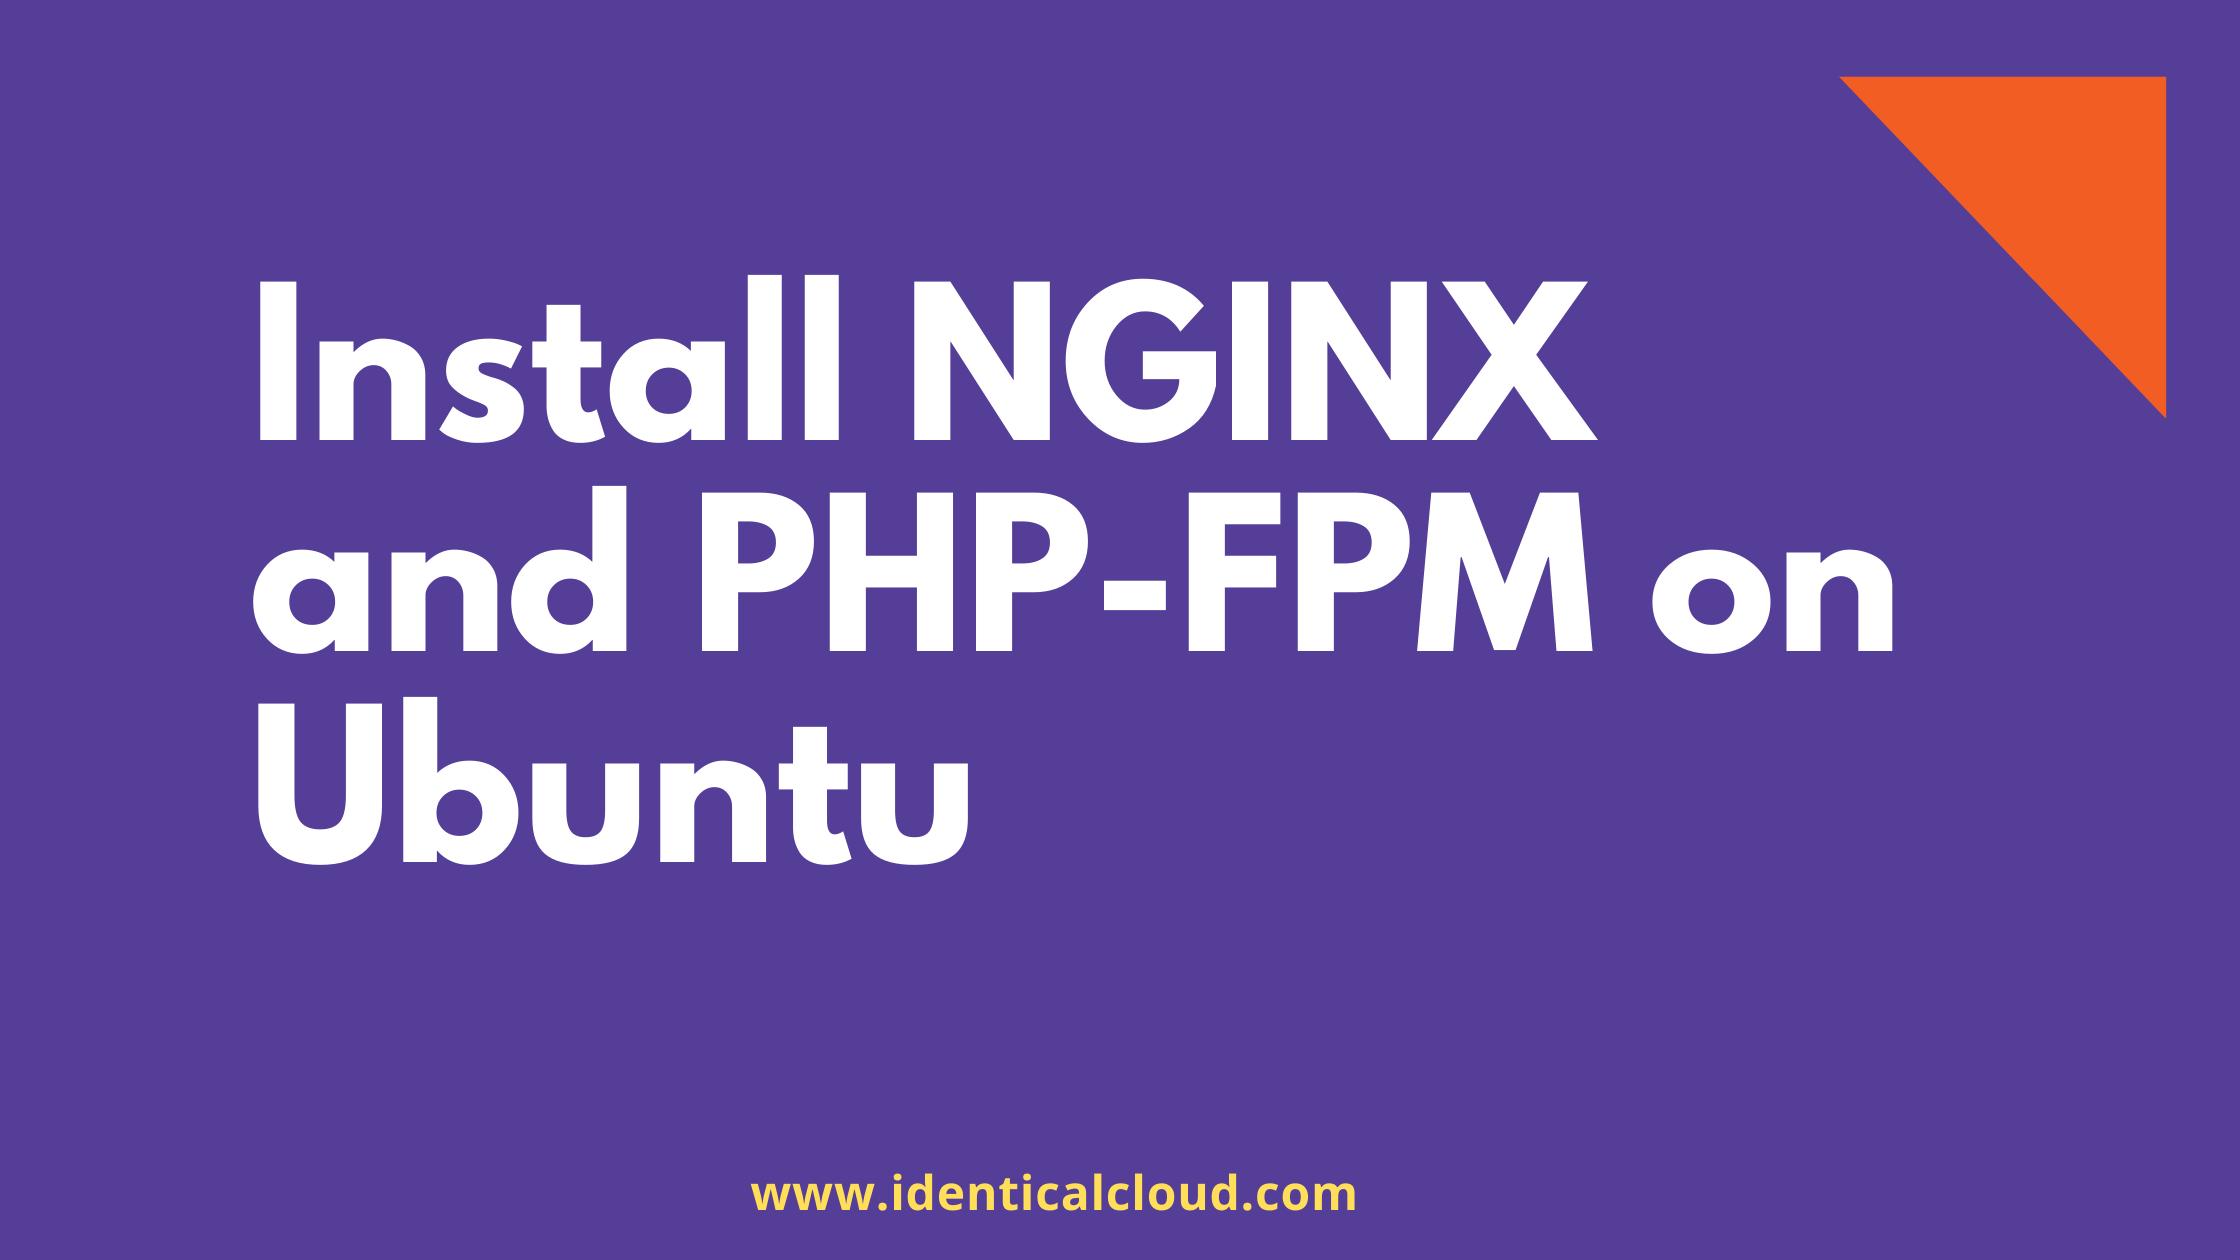 install nginx and php-fpm on ubuntu, nginx, php, php-fpm, ubuntu 14.04, ubuntu 16.04, ubuntu 18.04, ubuntu 20.04, linux, server, aws, lemp, lamp, web server